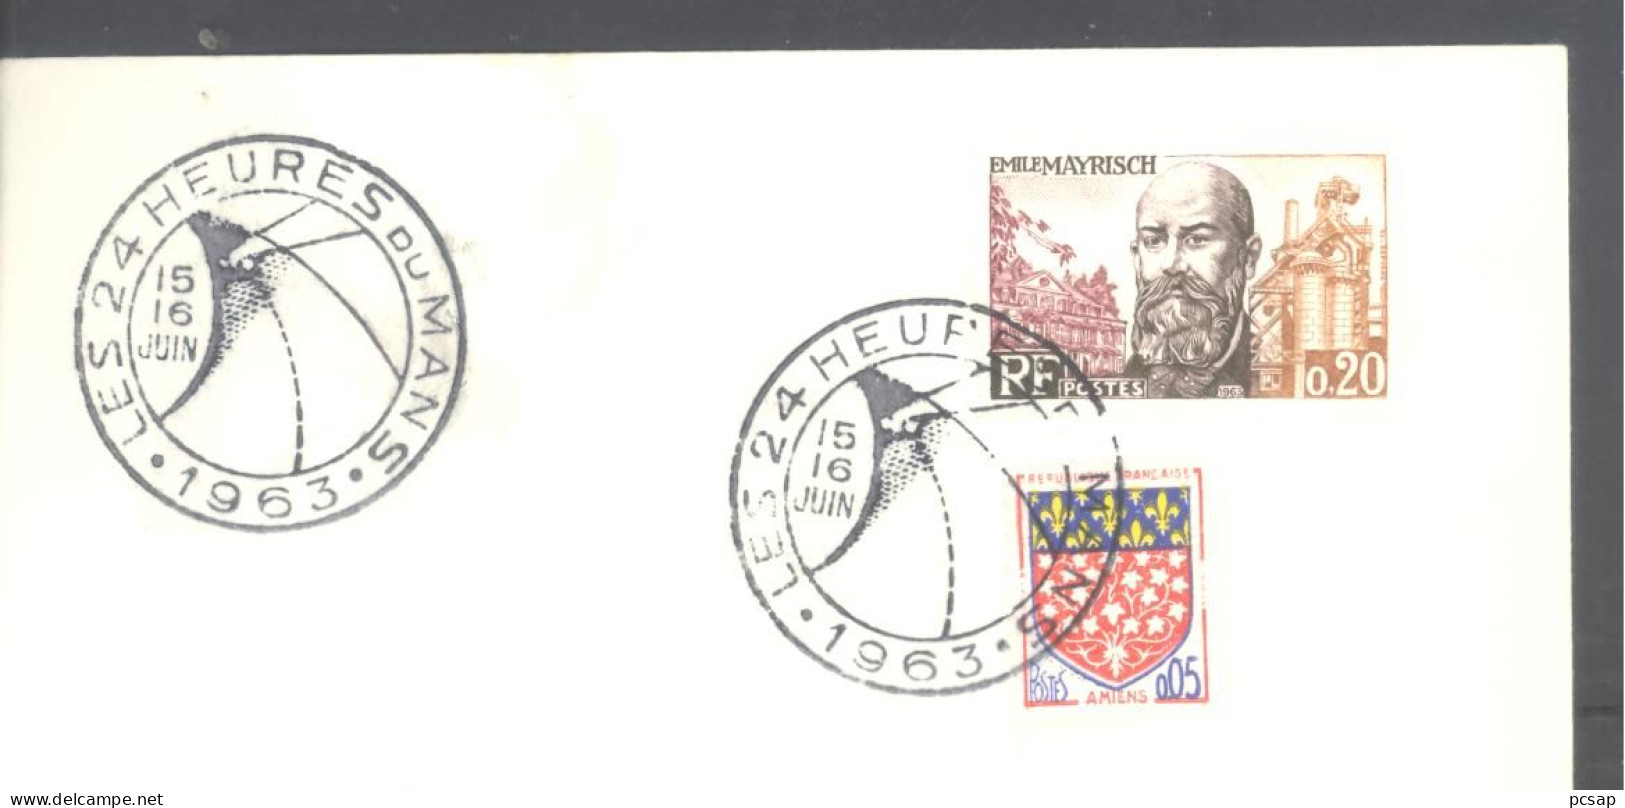 Les 24 Heures Du Mans - 15 Et 16 Juin 1963 (sur Enveloppe Entière) - Cachets Commémoratifs